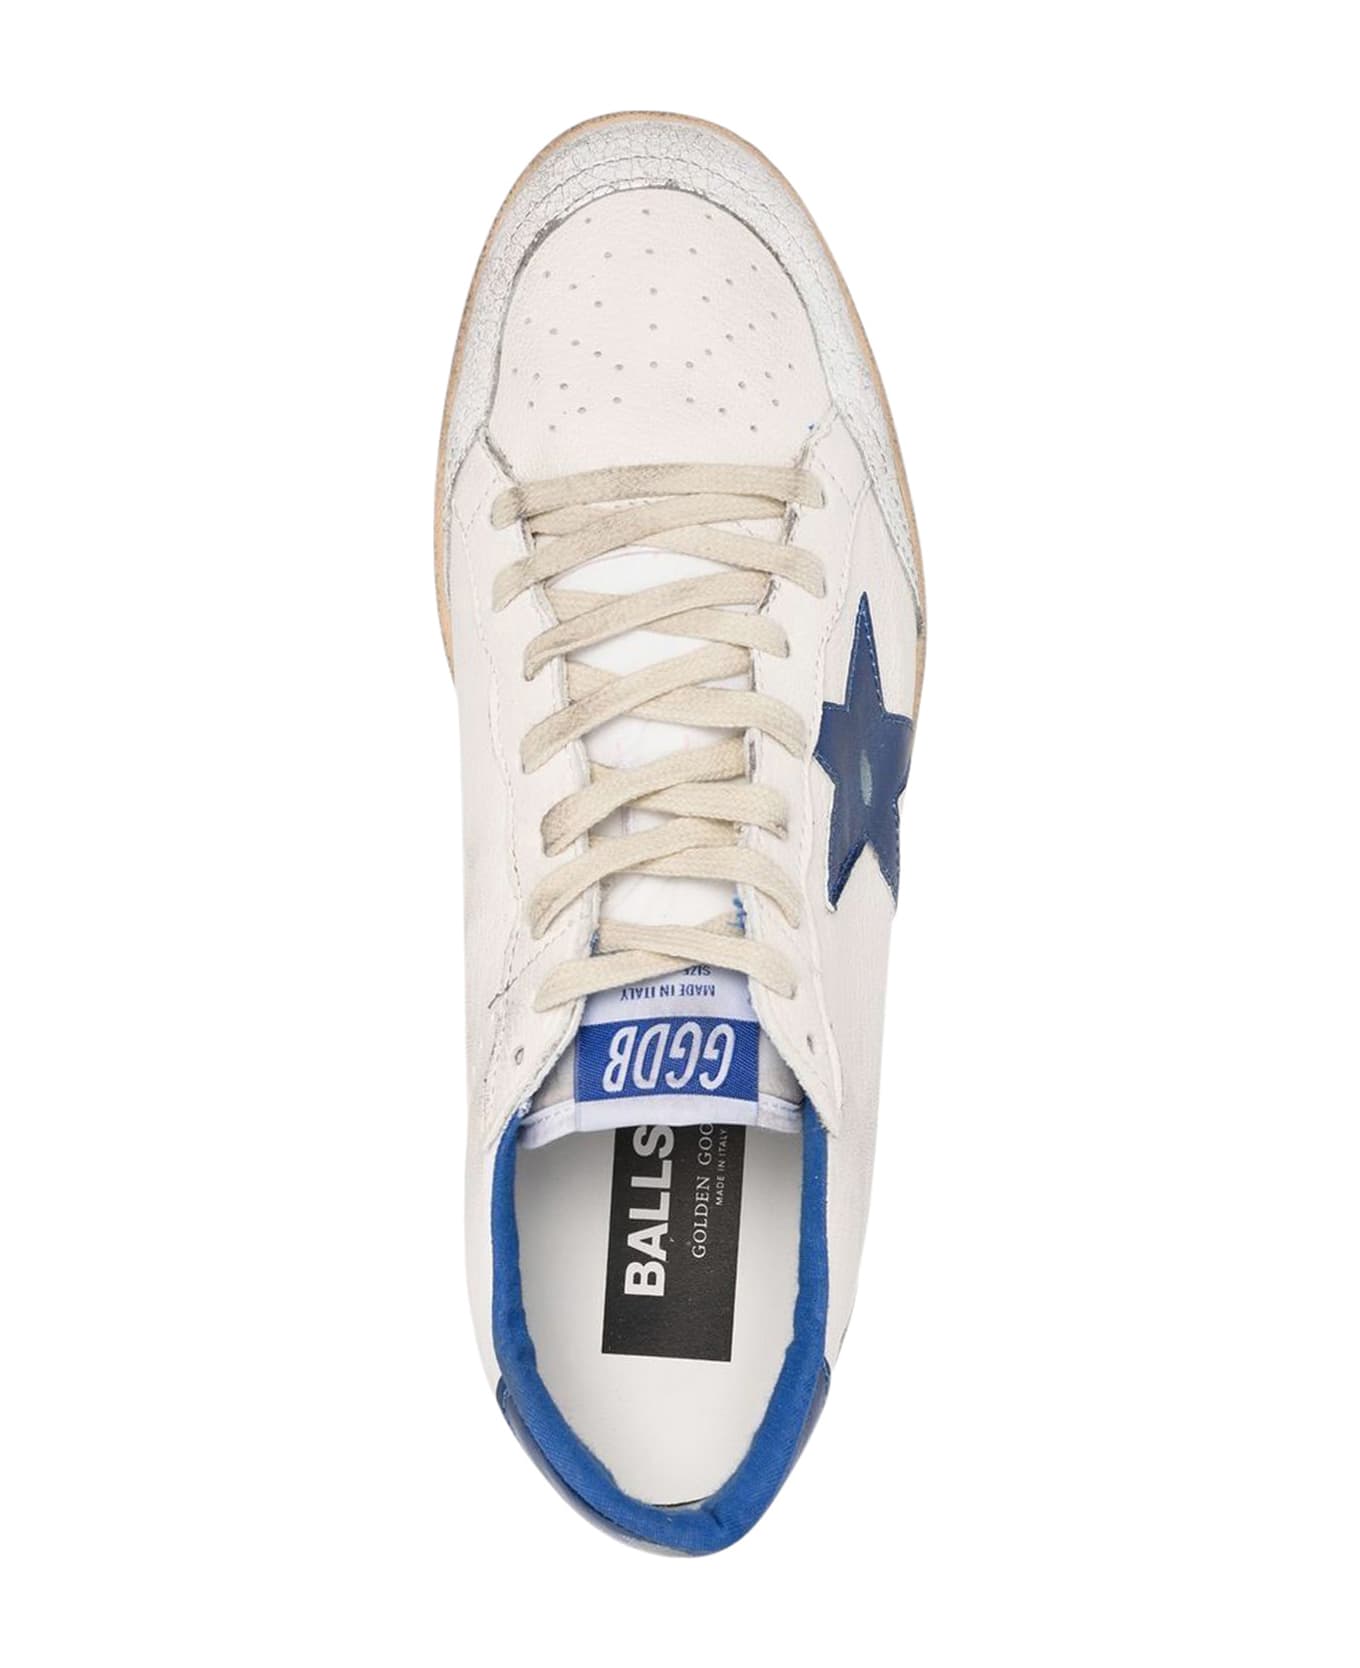 Golden Goose Ball Star Sneakers - White/Bluette スニーカー